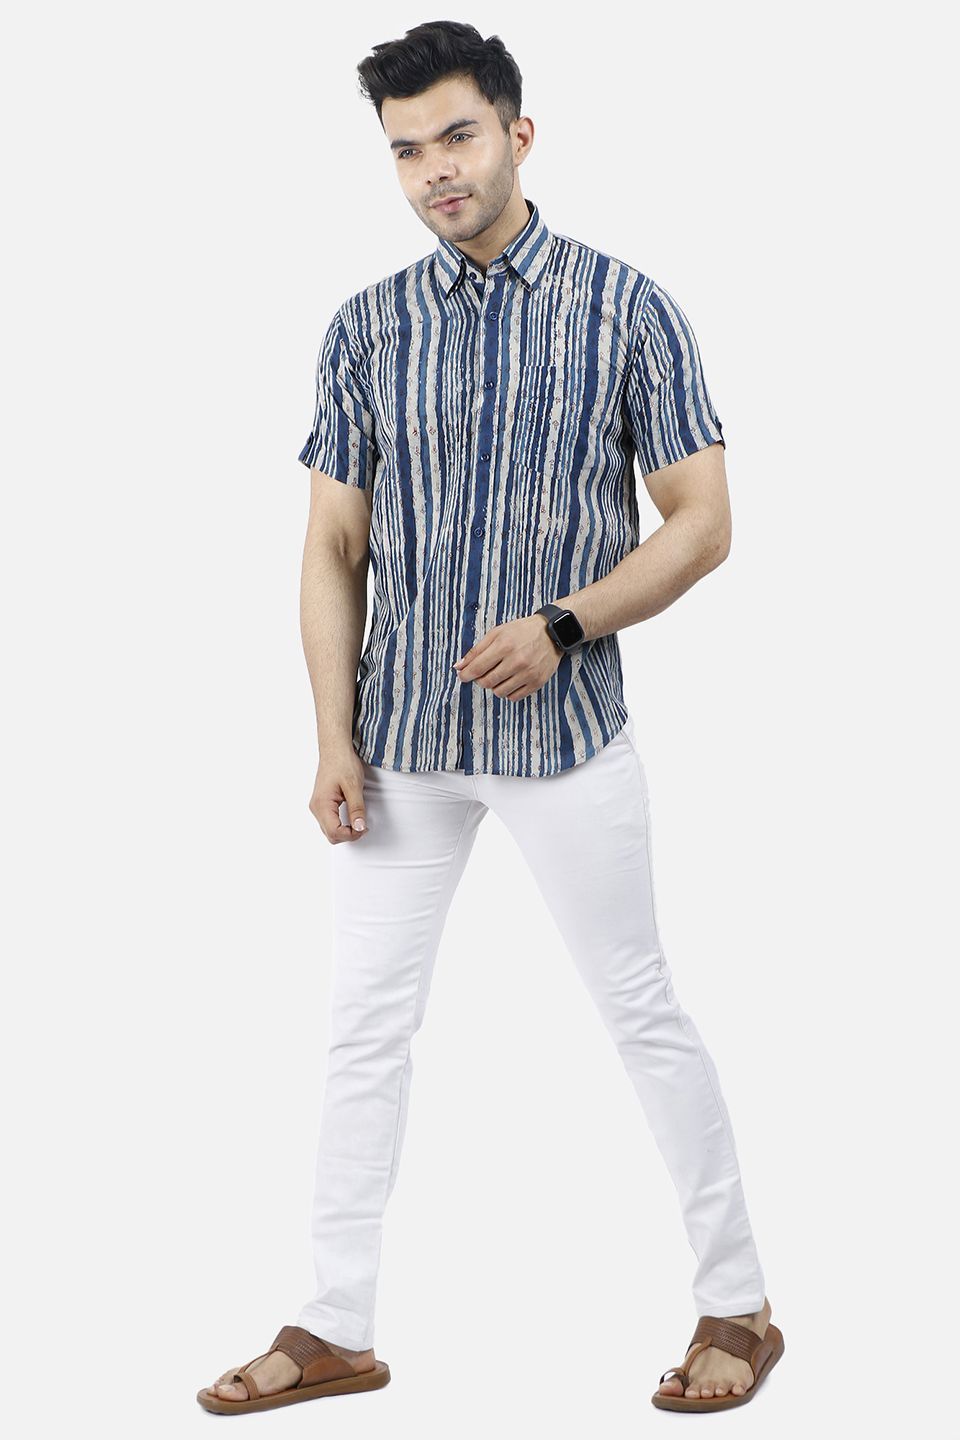 Jaipur 100% Cotton Blue Stripe Shirt